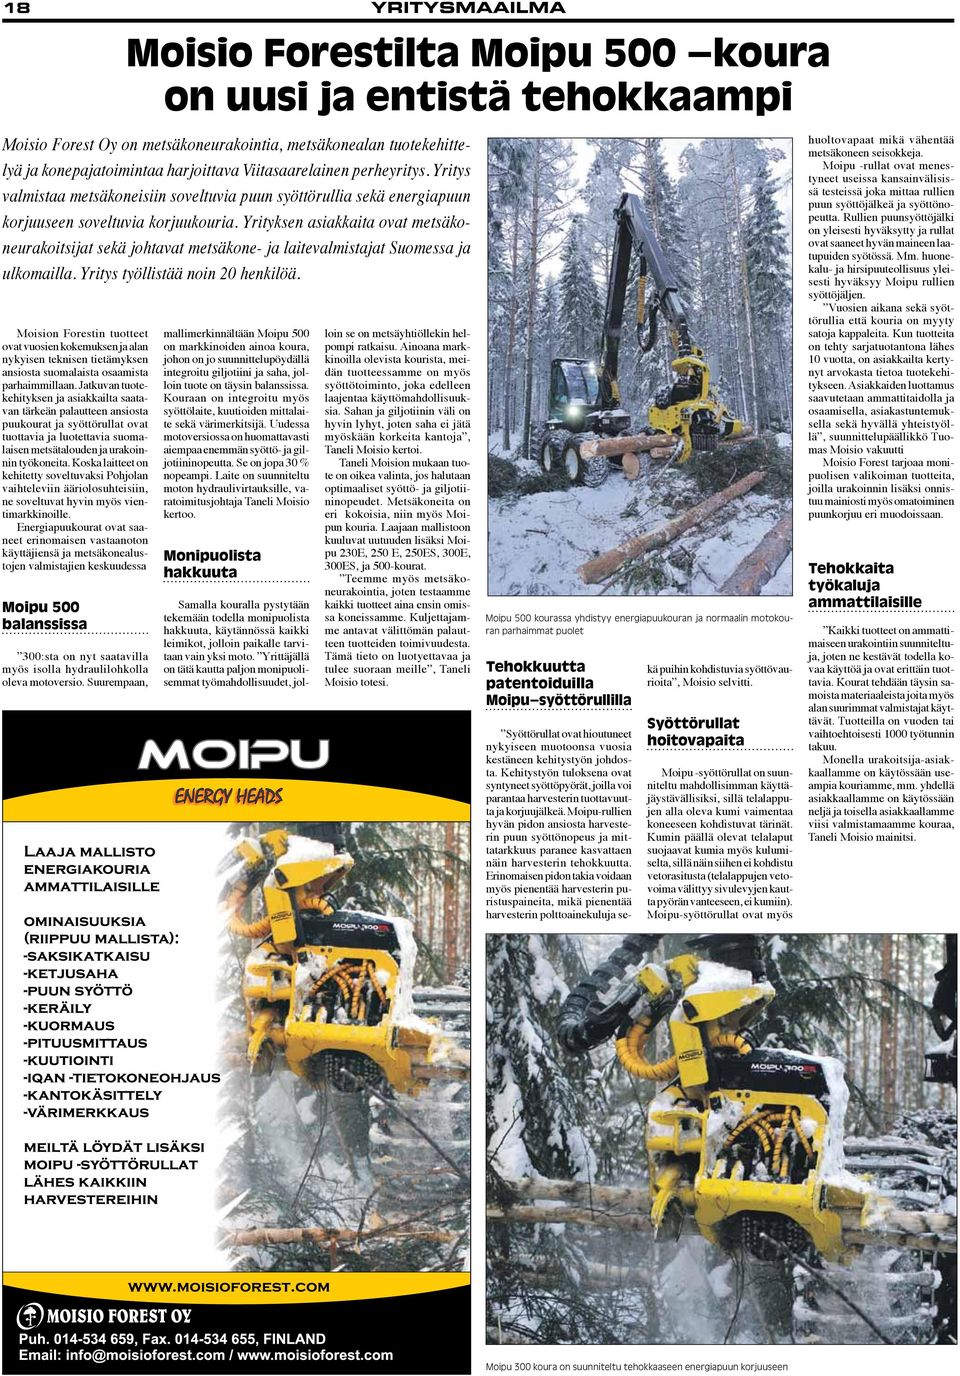 Yrityksen asiakkaita ovat metsäkoneurakoitsijat sekä johtavat metsäkone- ja laitevalmistajat Suomessa ja ulkomailla. Yritys työllistää noin 20 henkilöä.